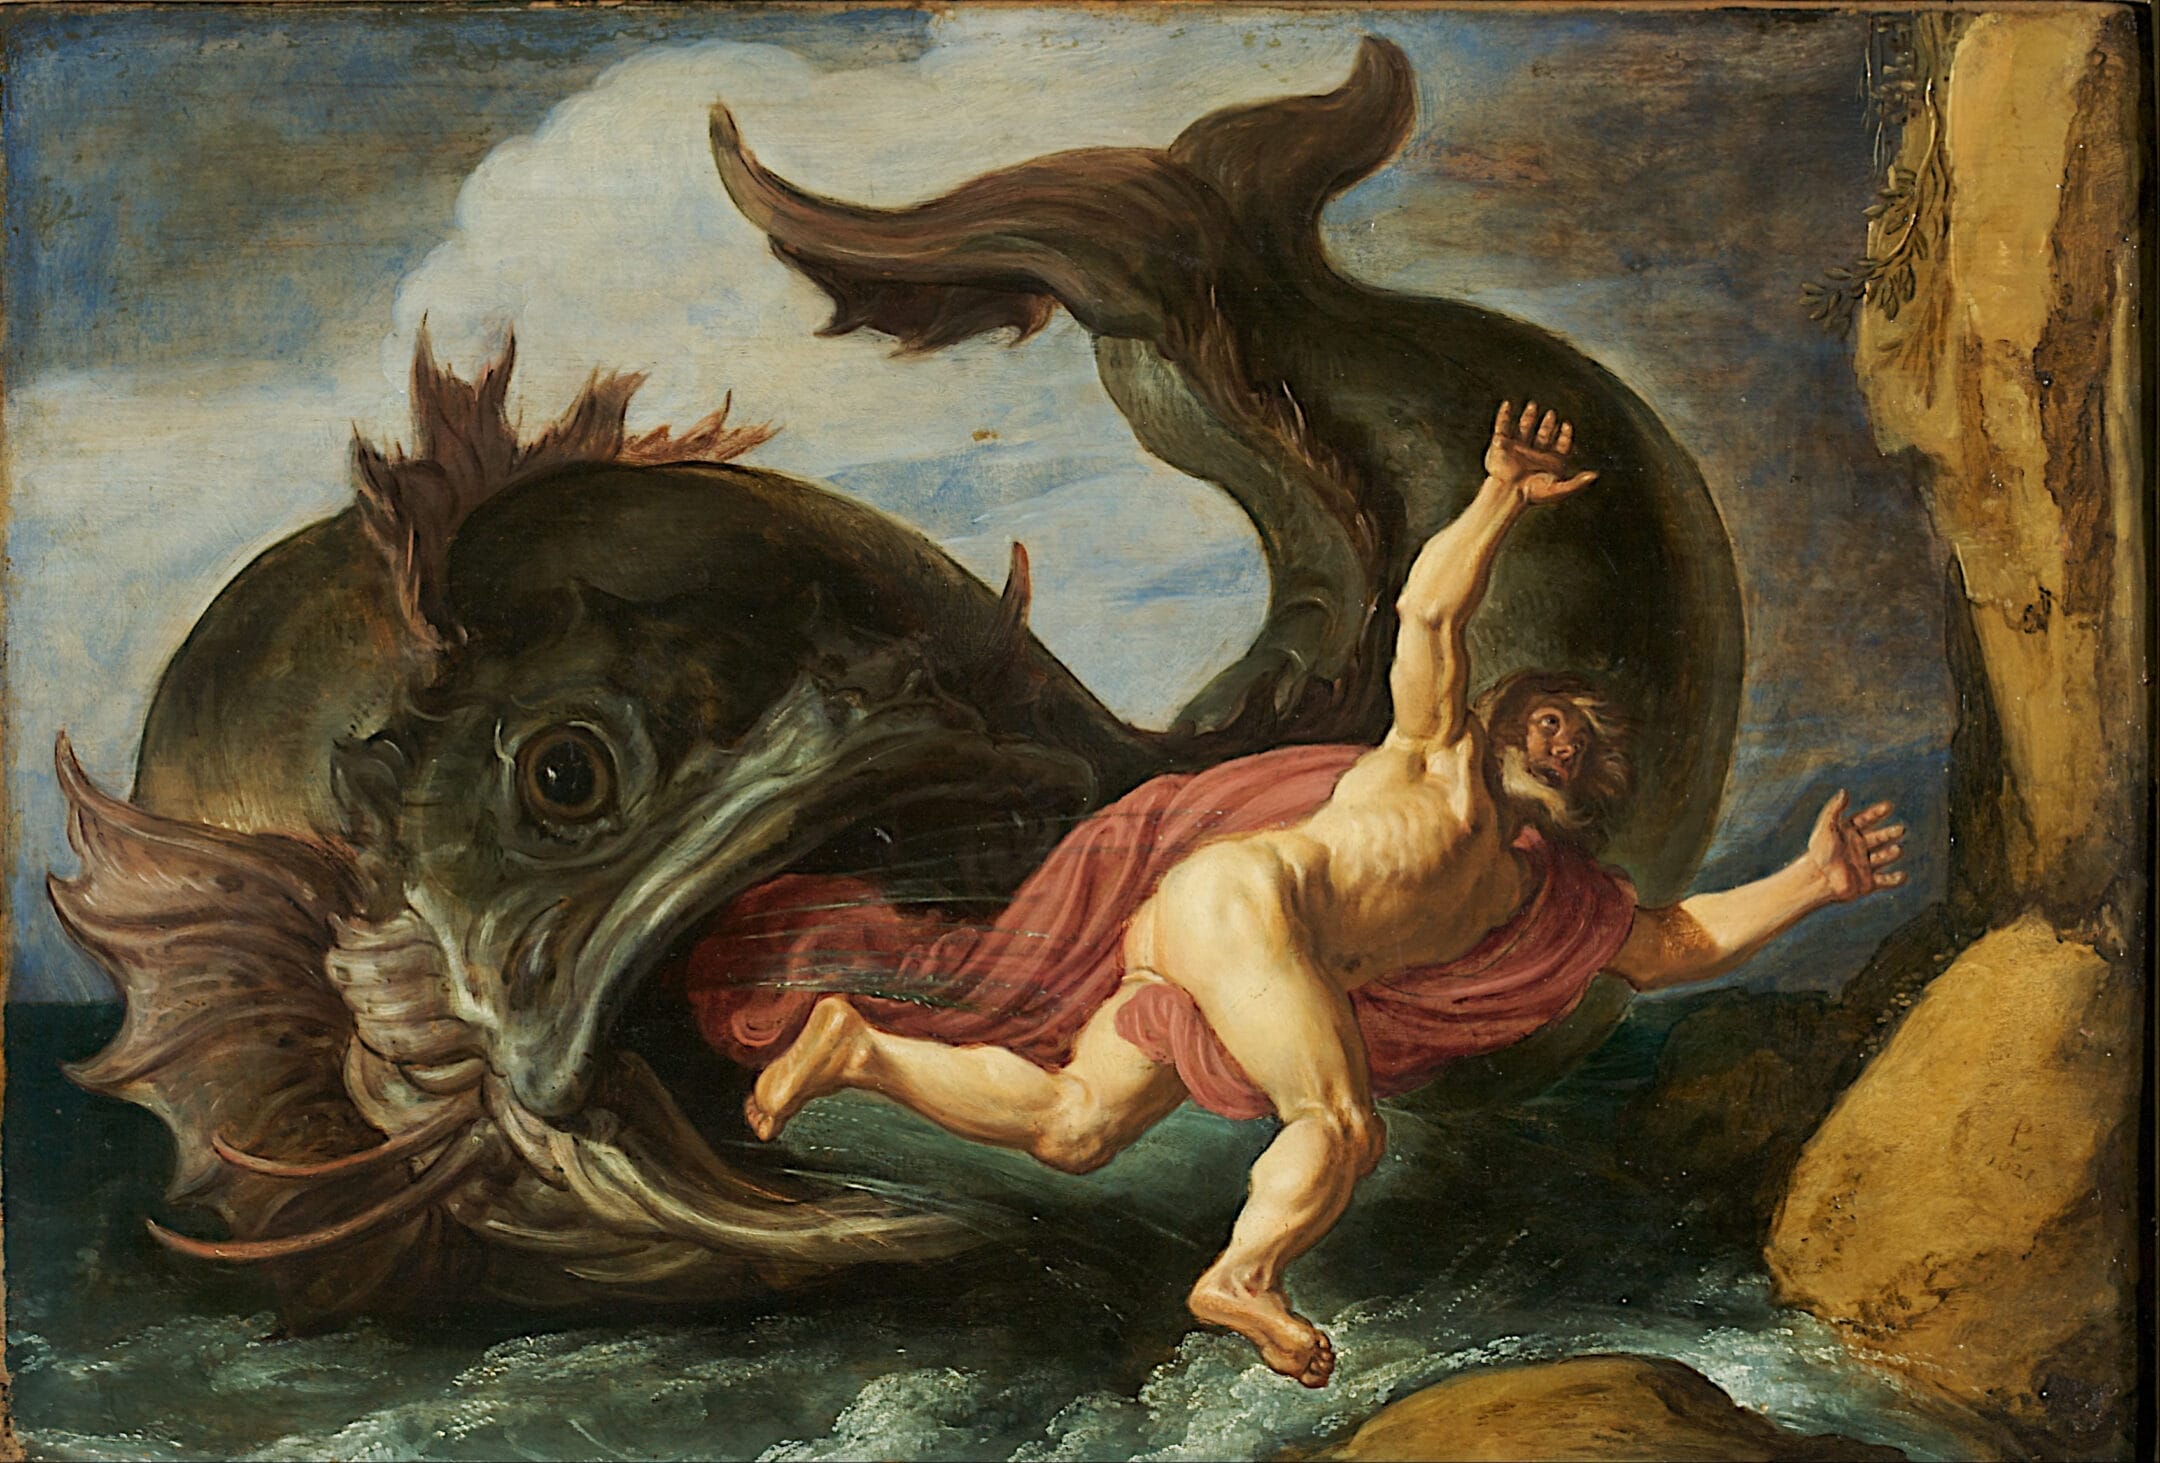 Pintura al óleo de Pieter Lastman (1583-1633 d.C.) que representa al profeta Jonás a punto de ser engullido por un pez gigante. La historia de Jonás se encuentra en el Libro de Jonás del Antiguo Testamento de la Biblia.